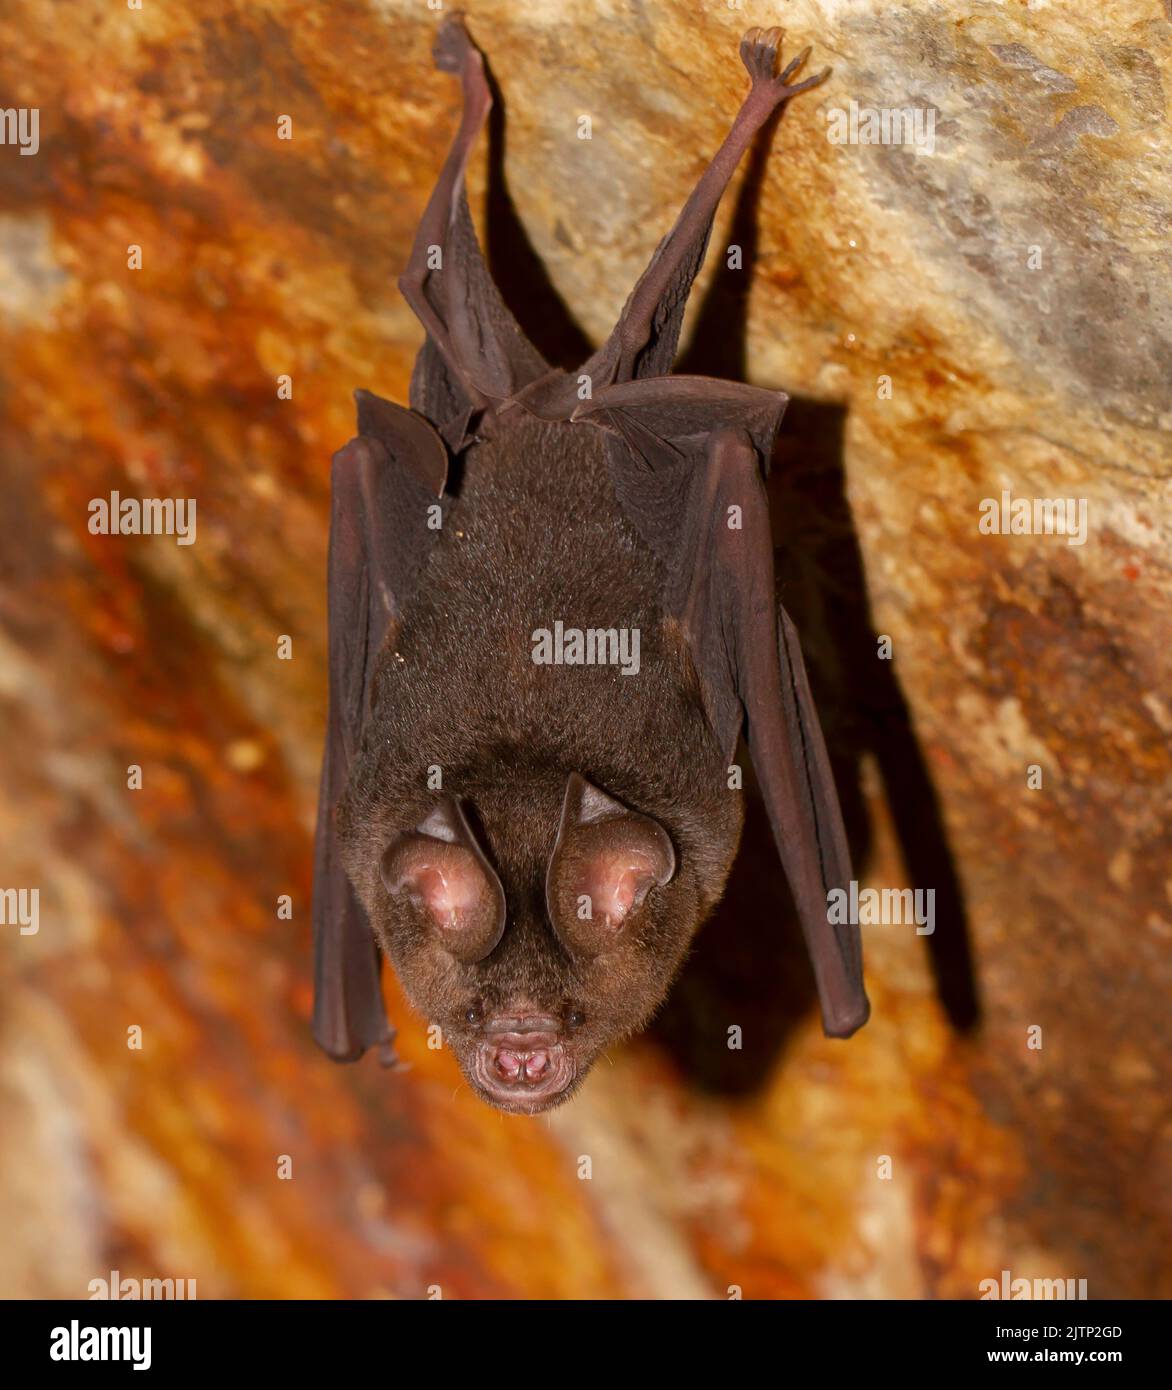 bat in a cave; micro bat in the cave; bat resting in a cave, resting bat; Micro bat from Galle, Sri Lanka; Stock Photo